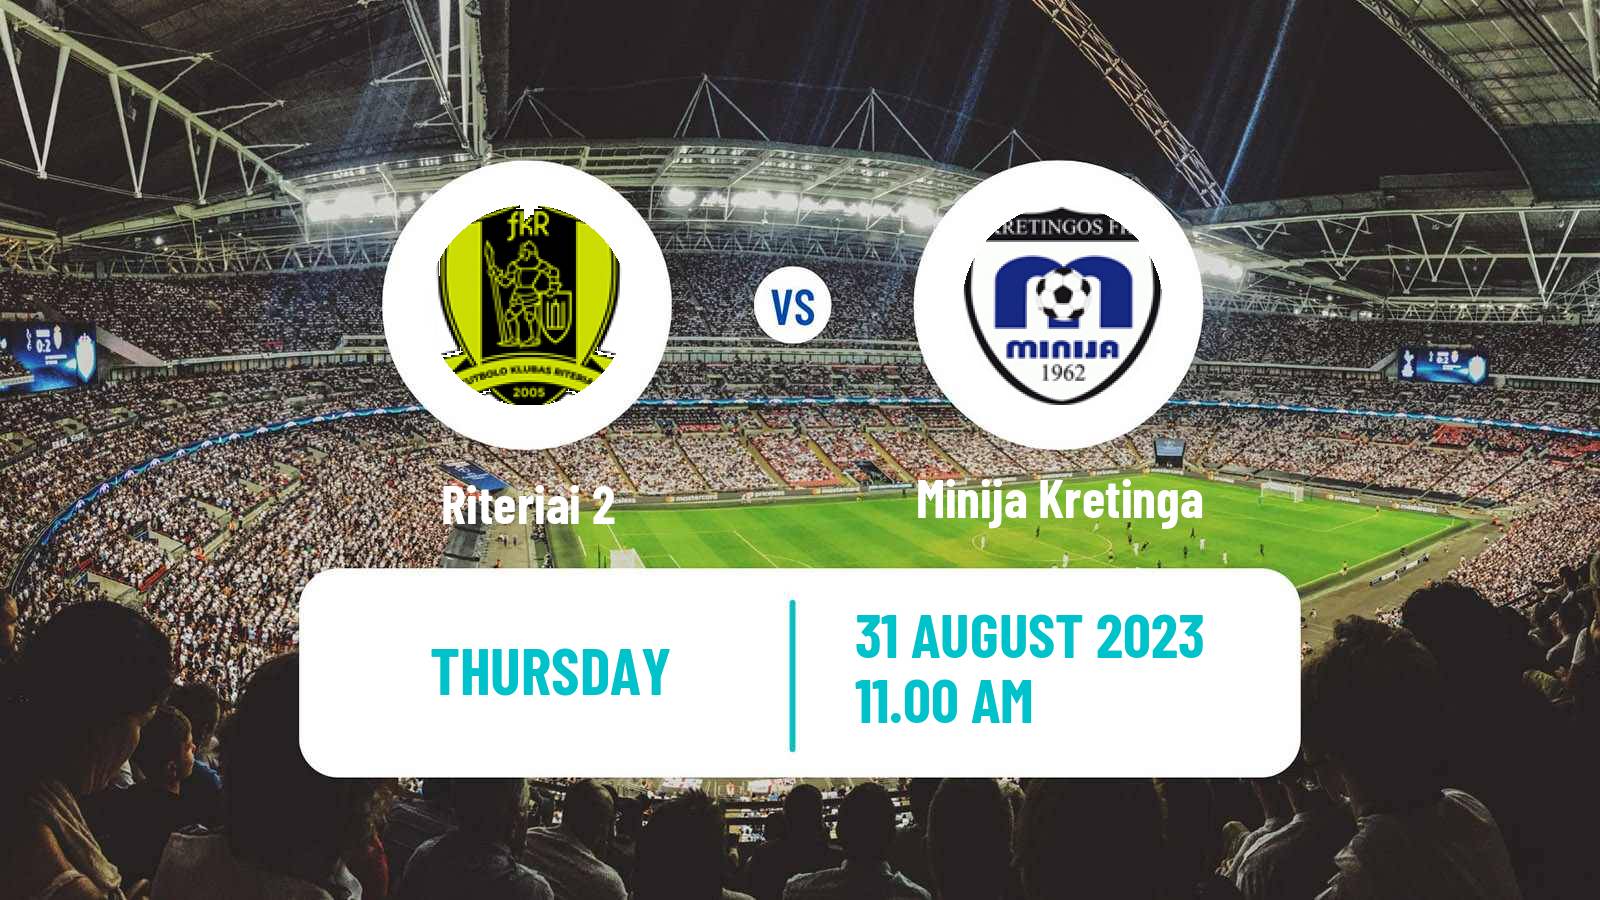 Soccer Lithuanian Division 2 Riteriai 2 - Minija Kretinga